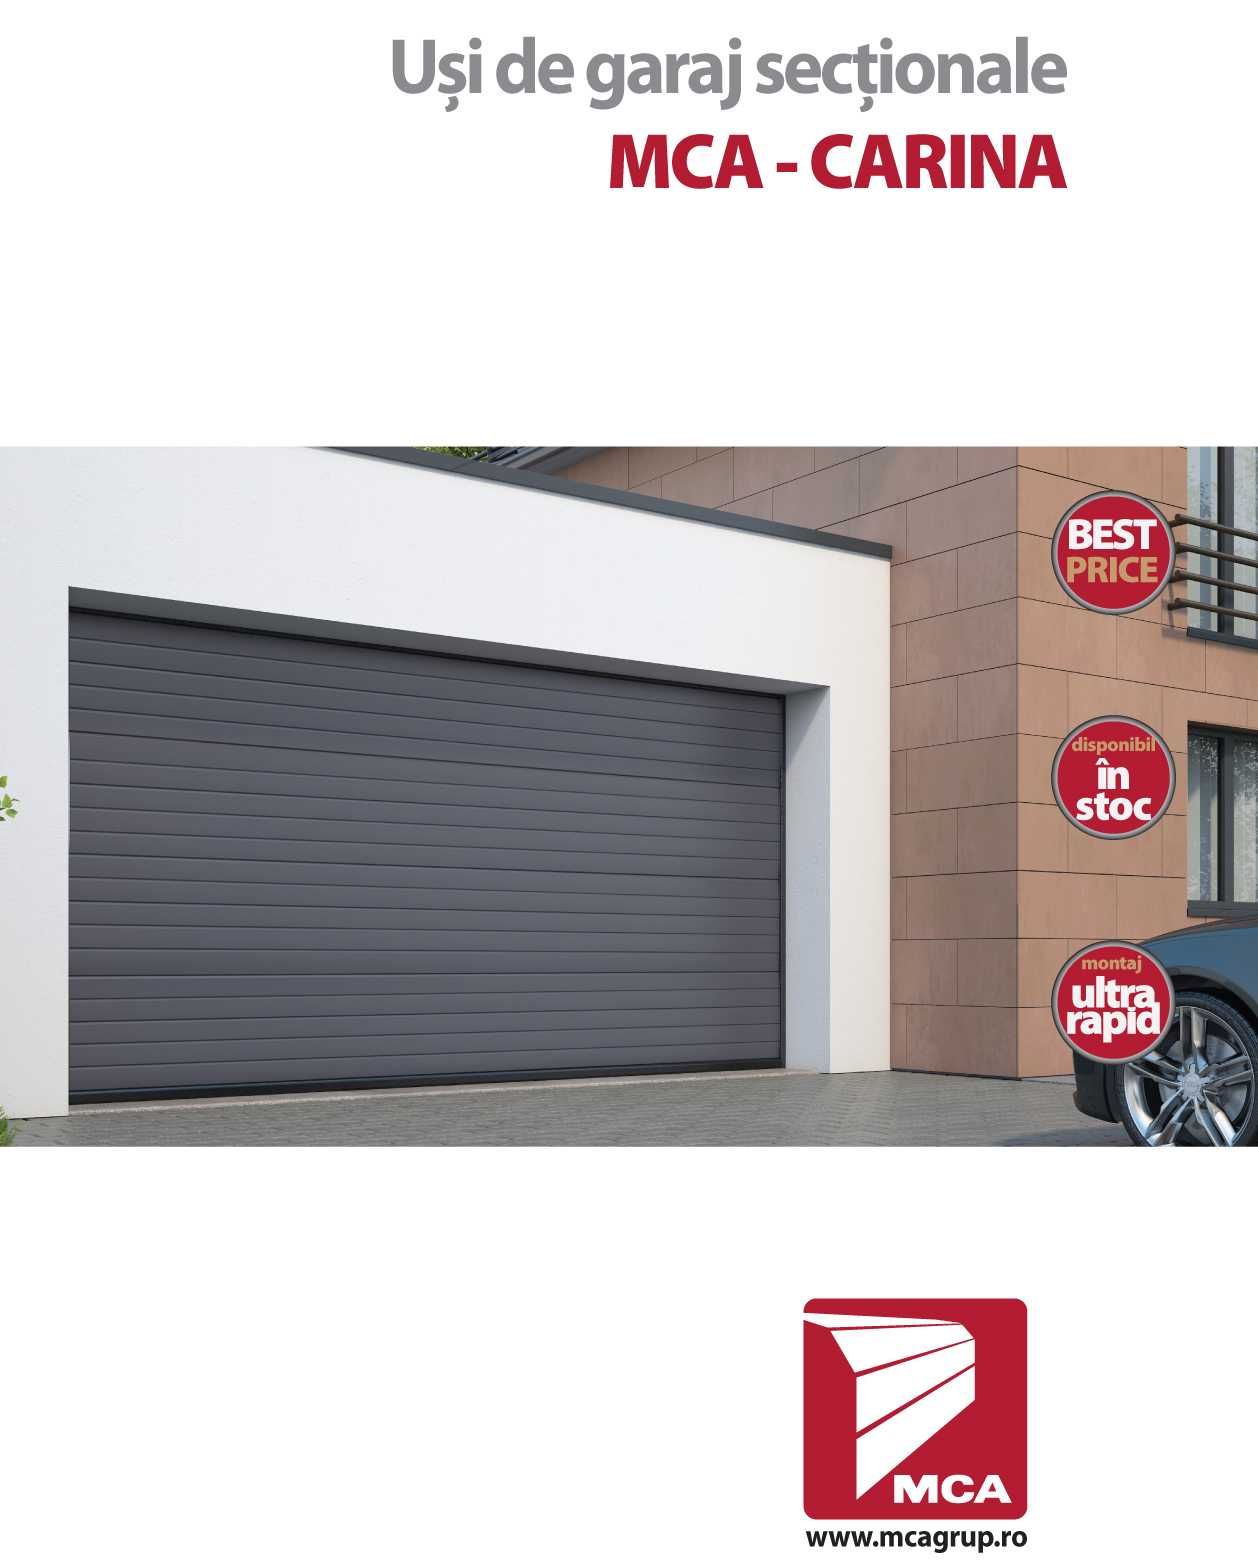 Usa de garaj MCA, actionata din telecomanda, 2500x2000 mm (LxH)